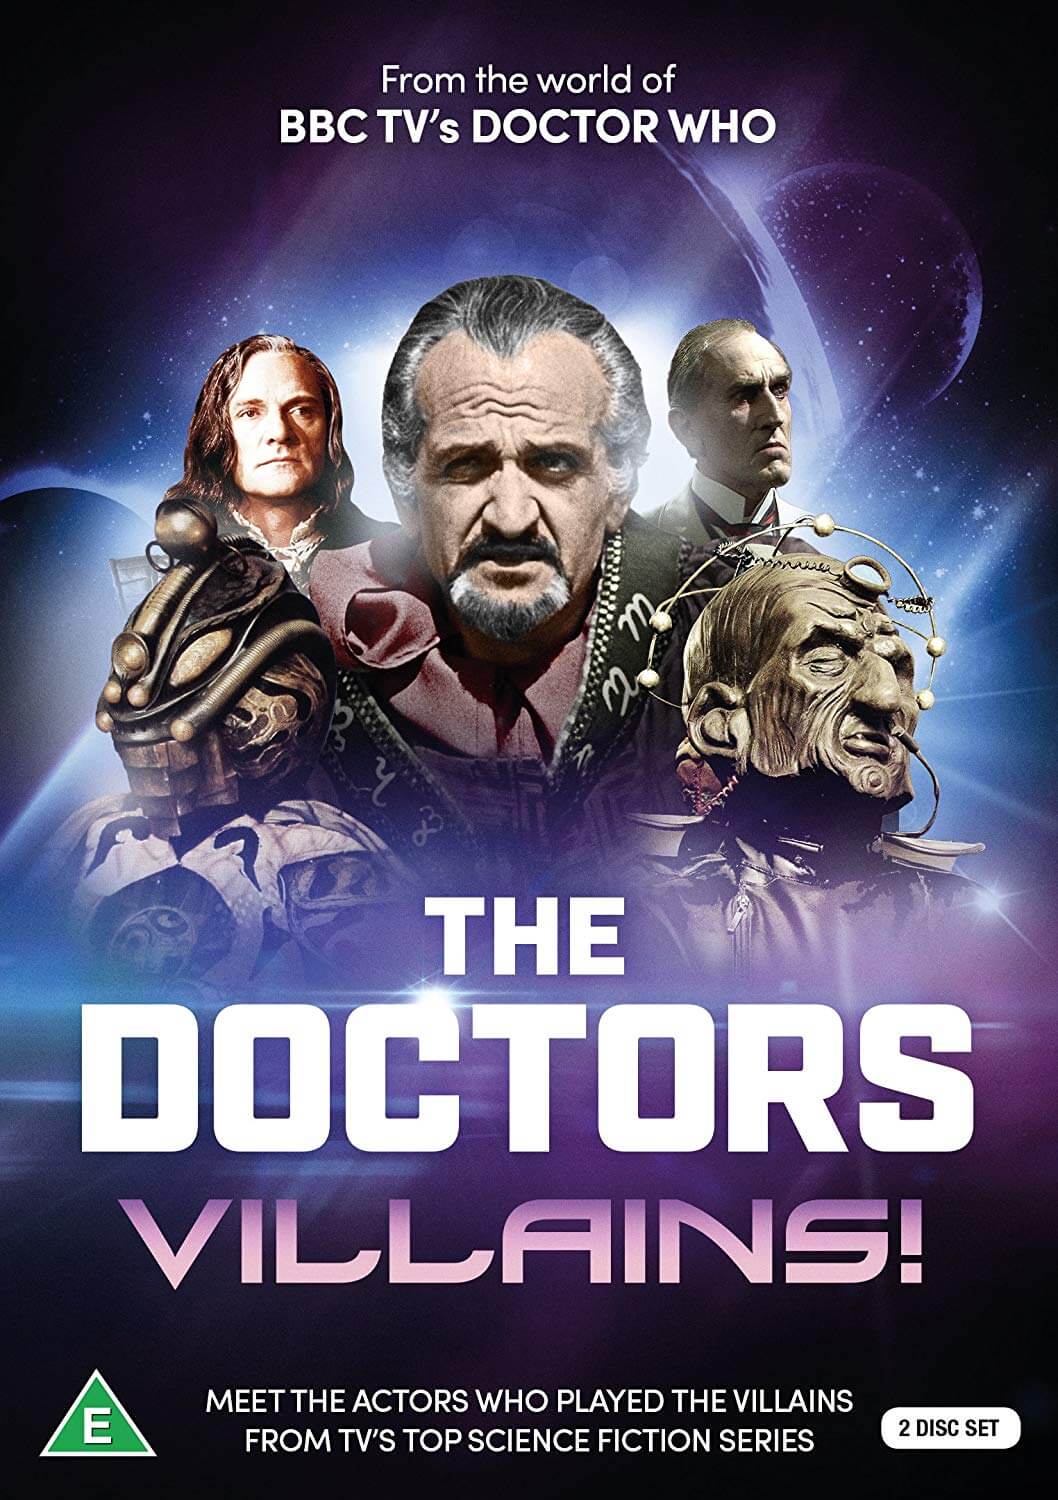 The Doctors: Villains!